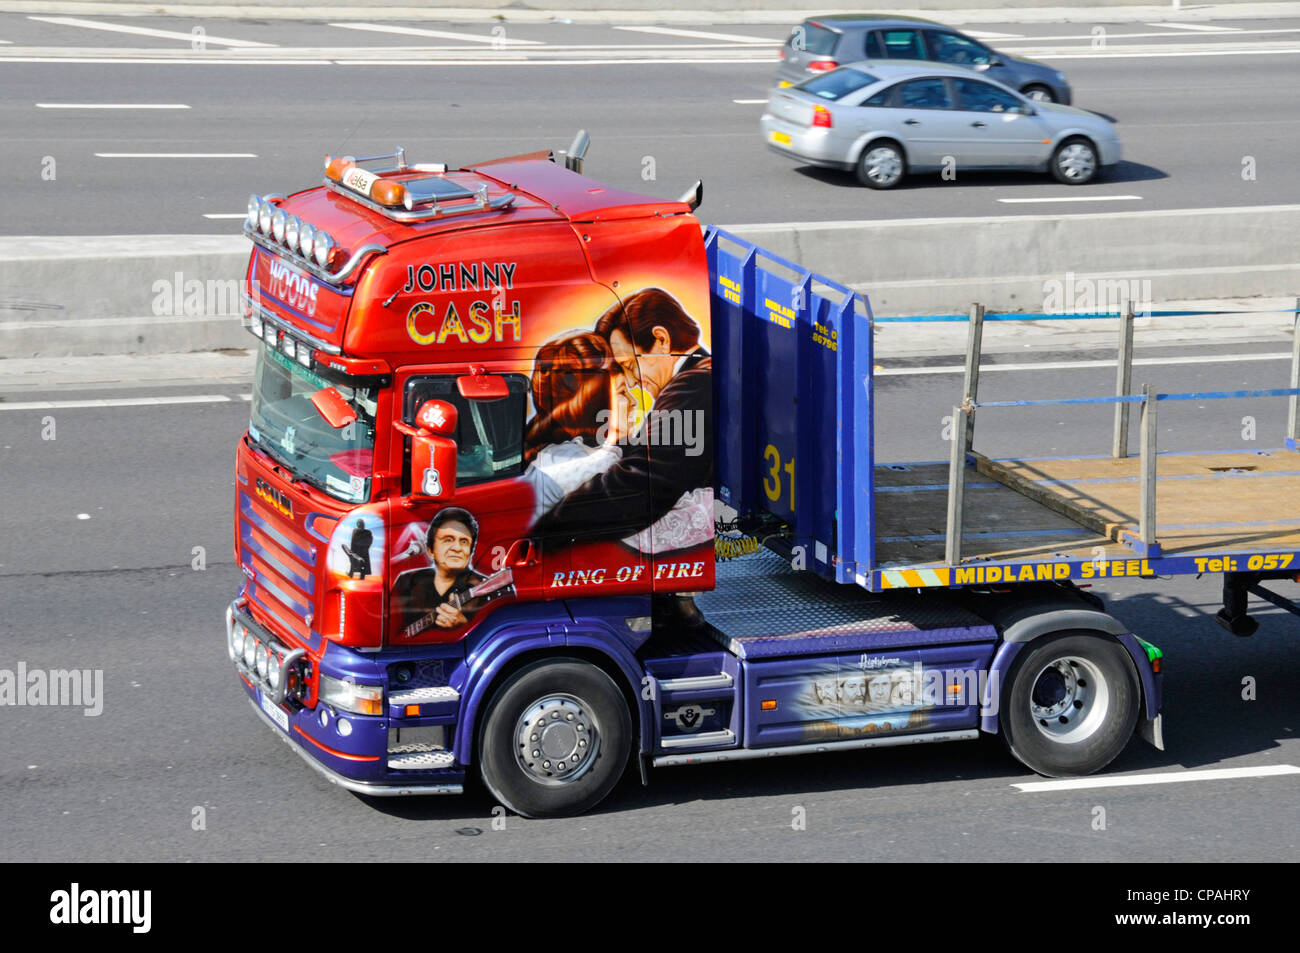 Cabine du camion Scania avec Johnny Cash graphiques Banque D'Images